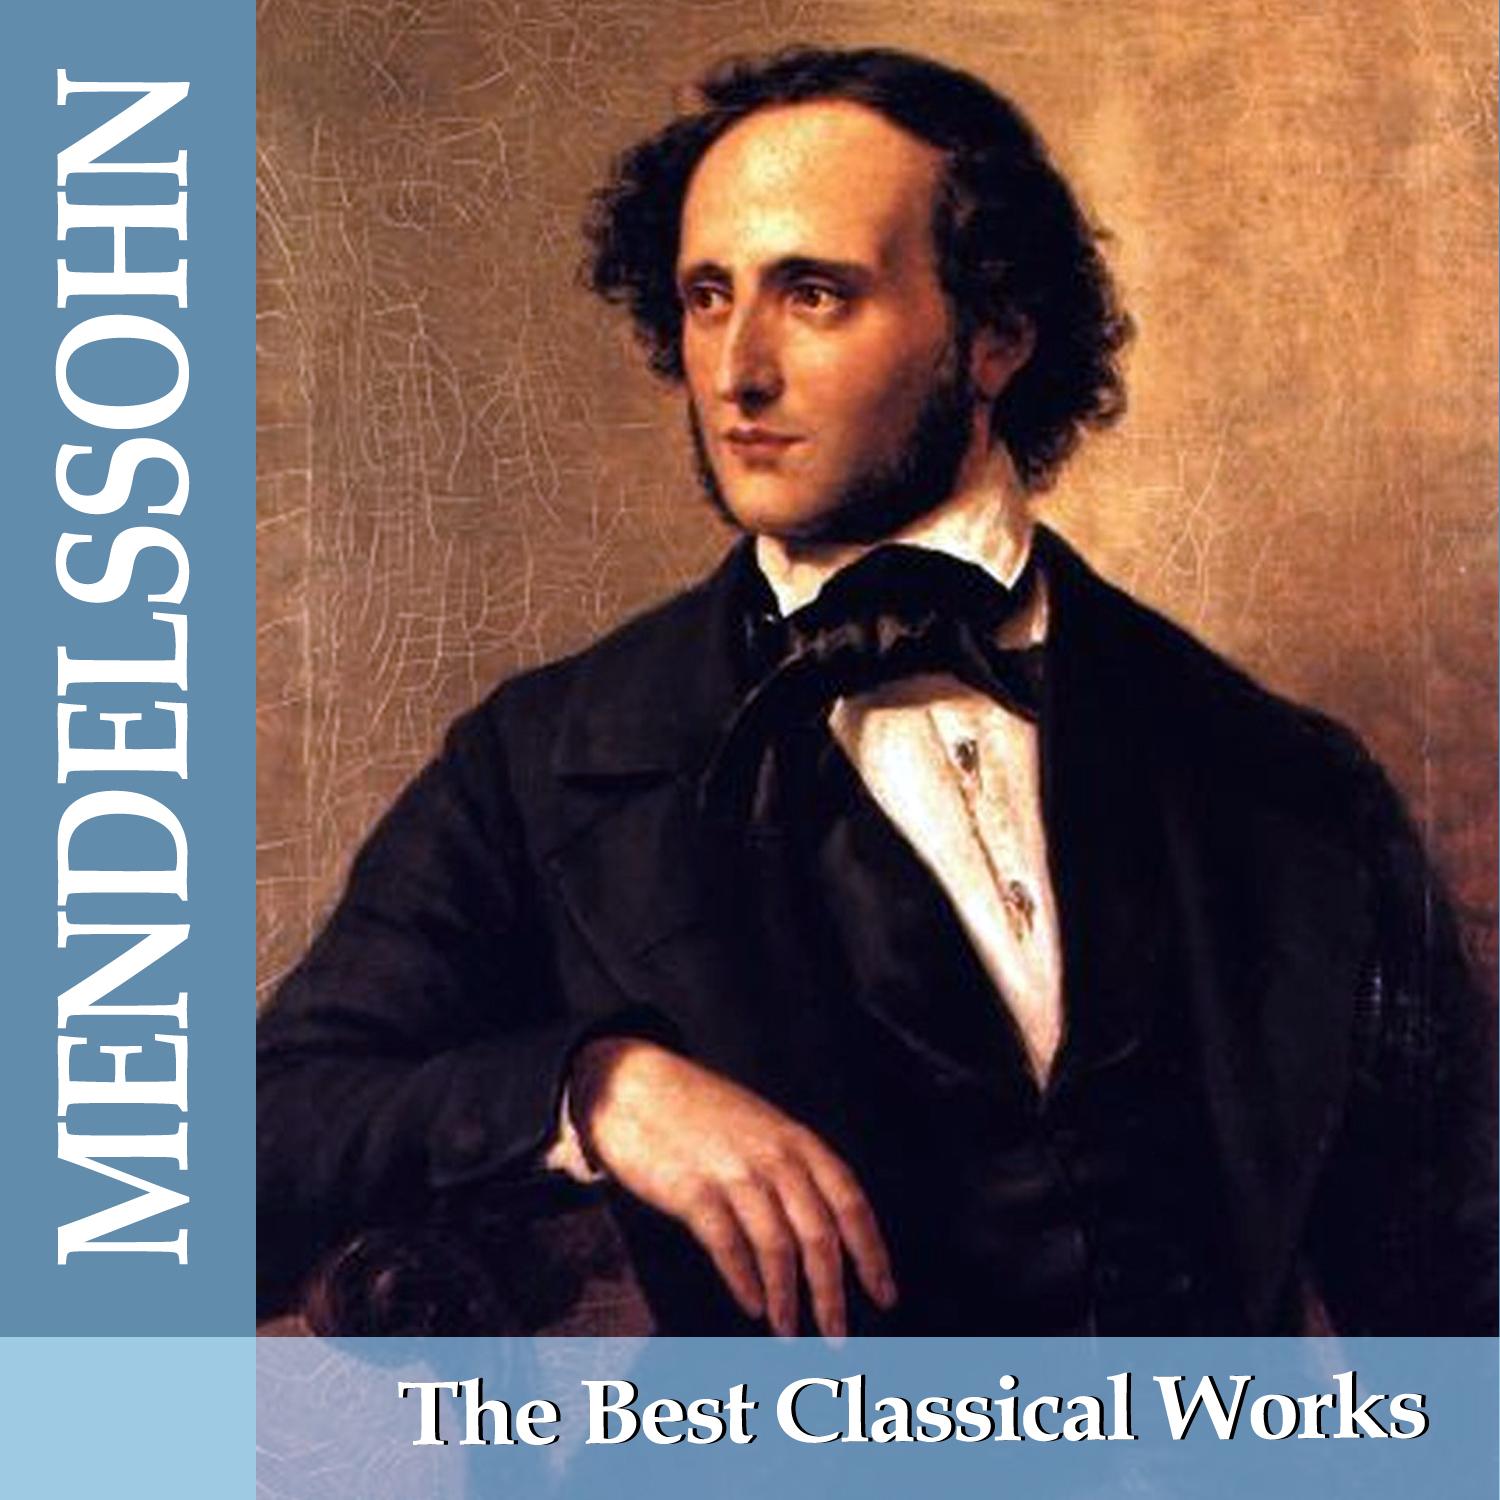 Mendelssohn: The Best Classical Works